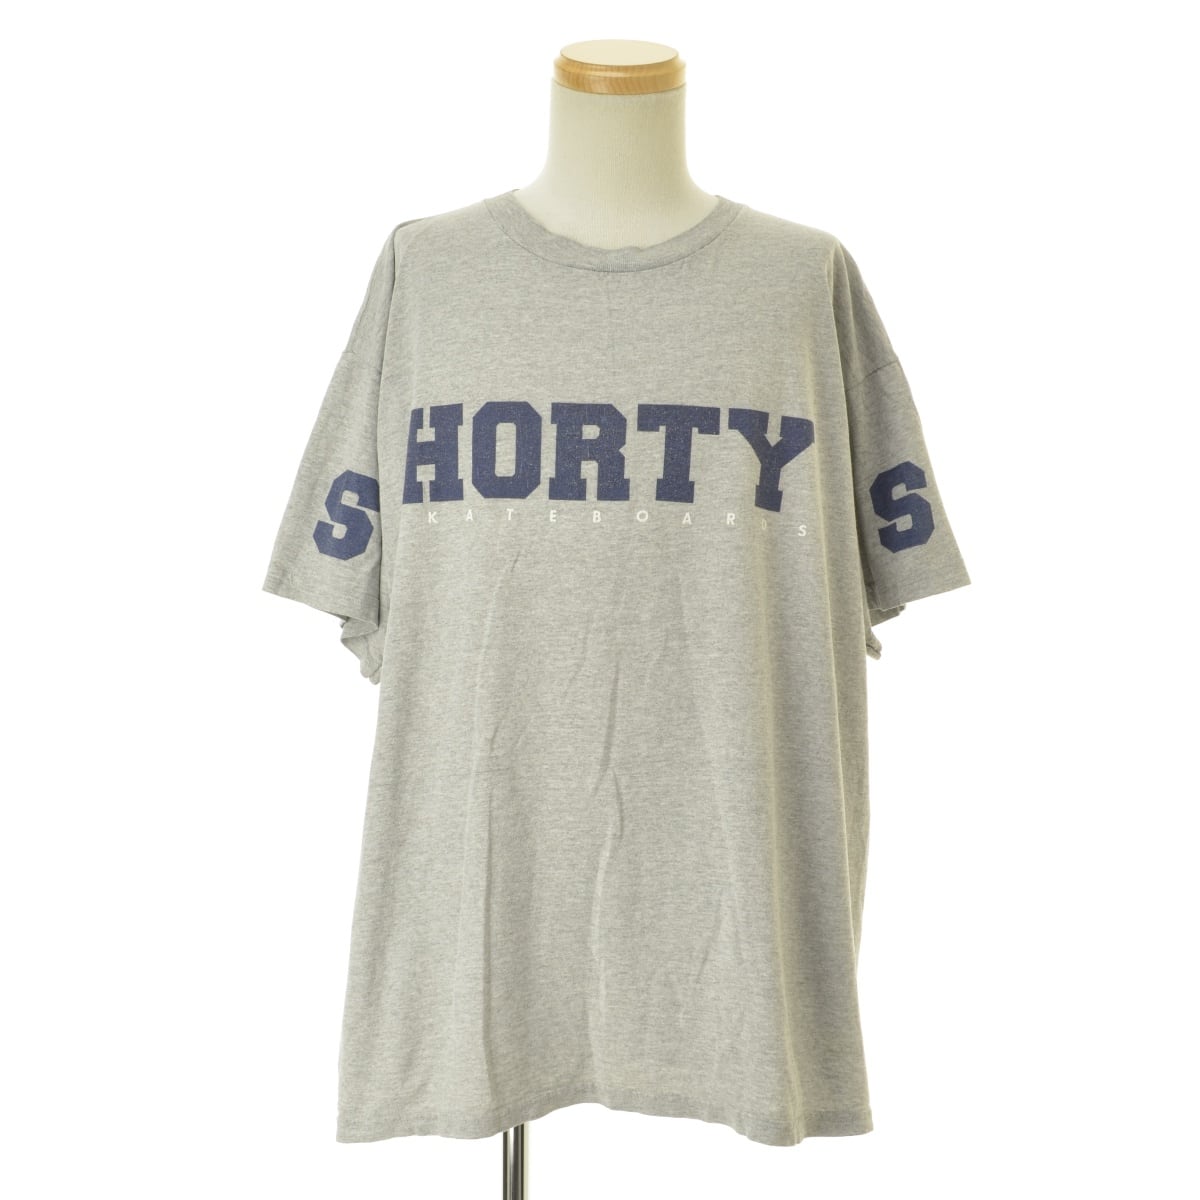 SHORTY'S / ショーティーズ 90s USA製 HORTYロゴ半袖Tシャツ oldskate